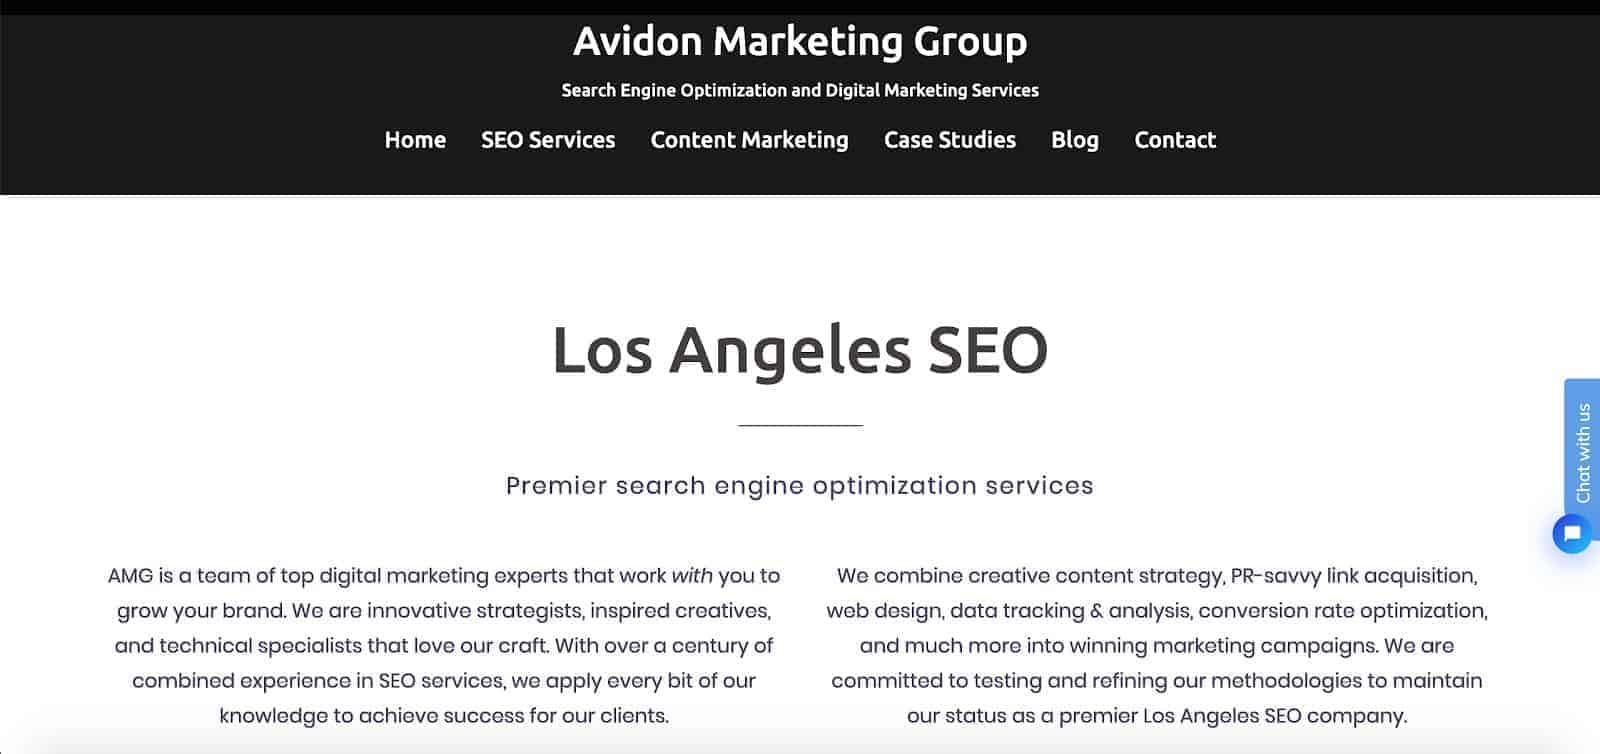 Avidon Marketing Group Los Angeles SEO Company